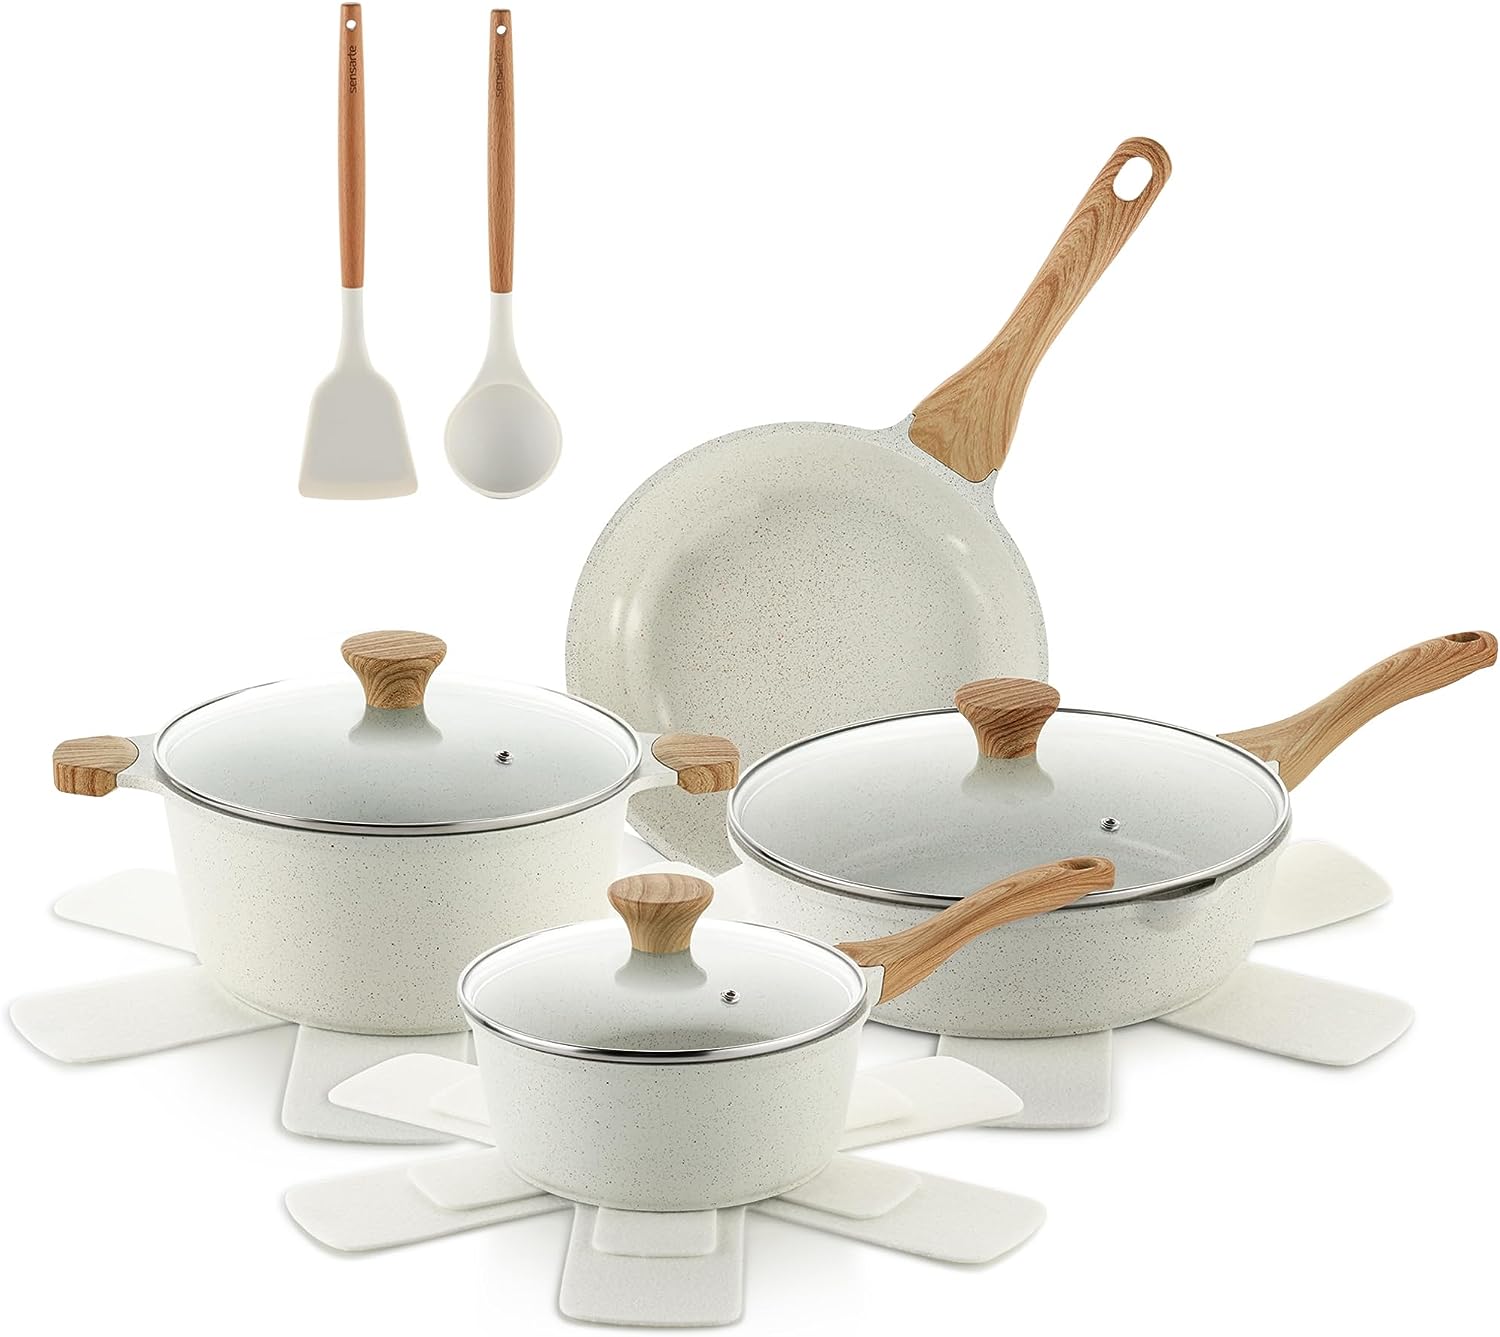 SENSARTE Ceramic Nonstick Pots and Pans Set, 17 Pieces Healthy Nonstick Cookware Set with Pots Protectors, Induction Kitchen Cookware Sets White, PFAS